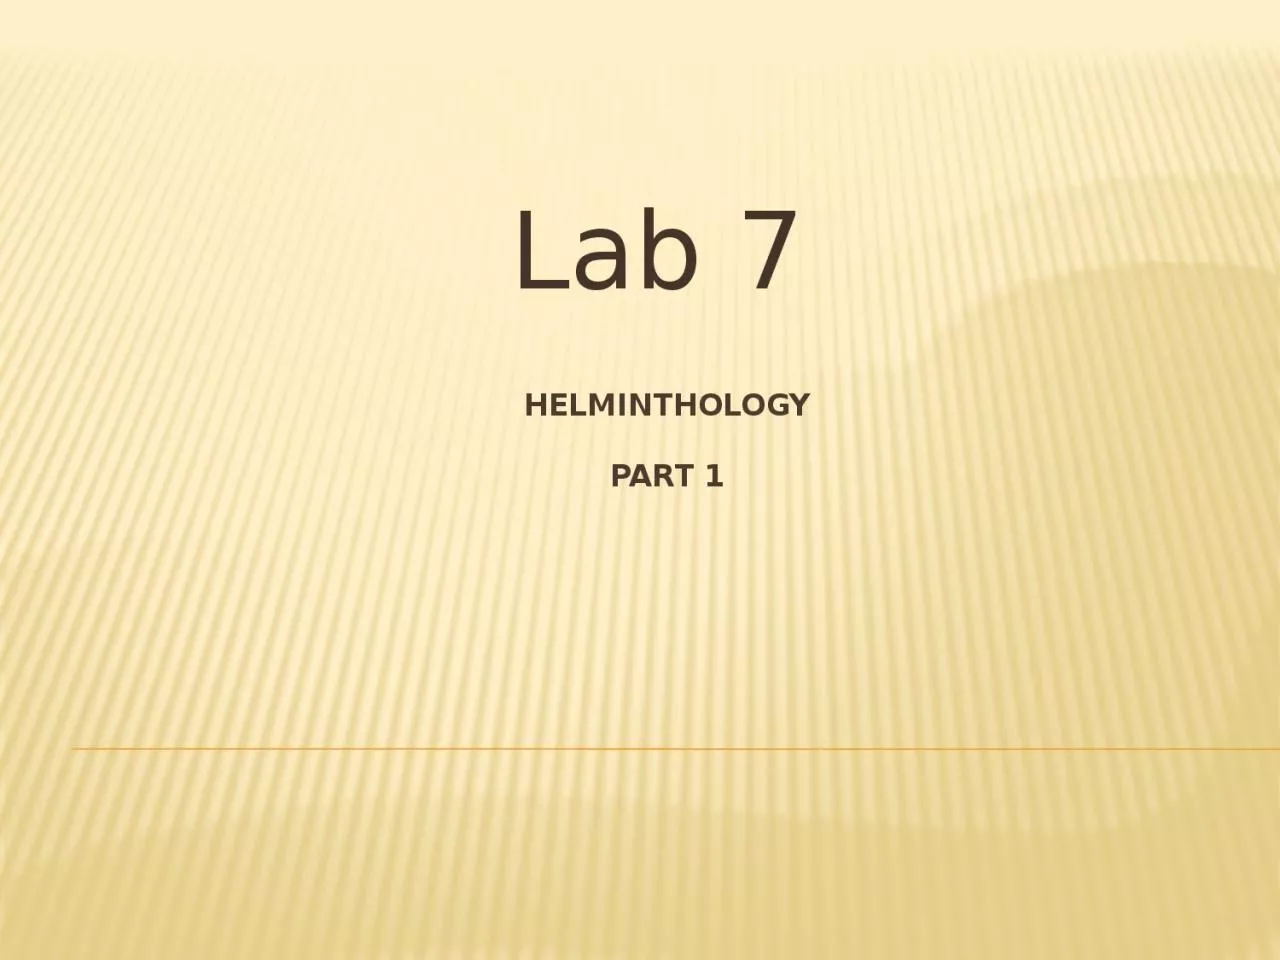 Helminthology Part 1 Lab 7